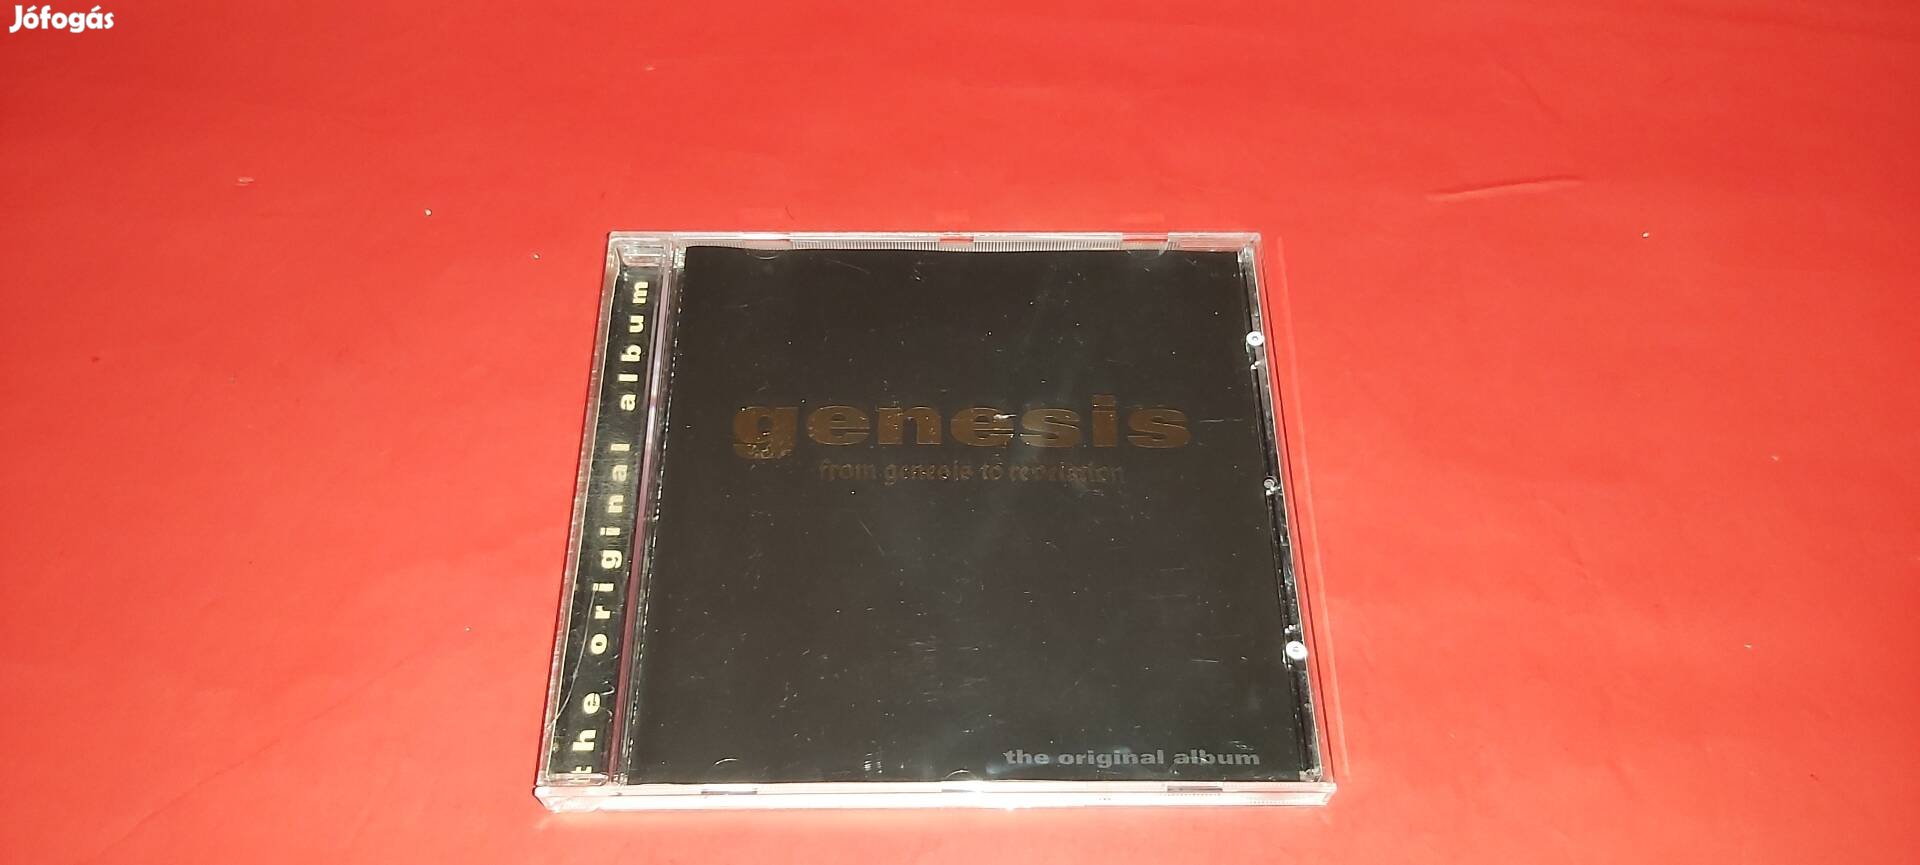 Genesis The original album Cd 1996